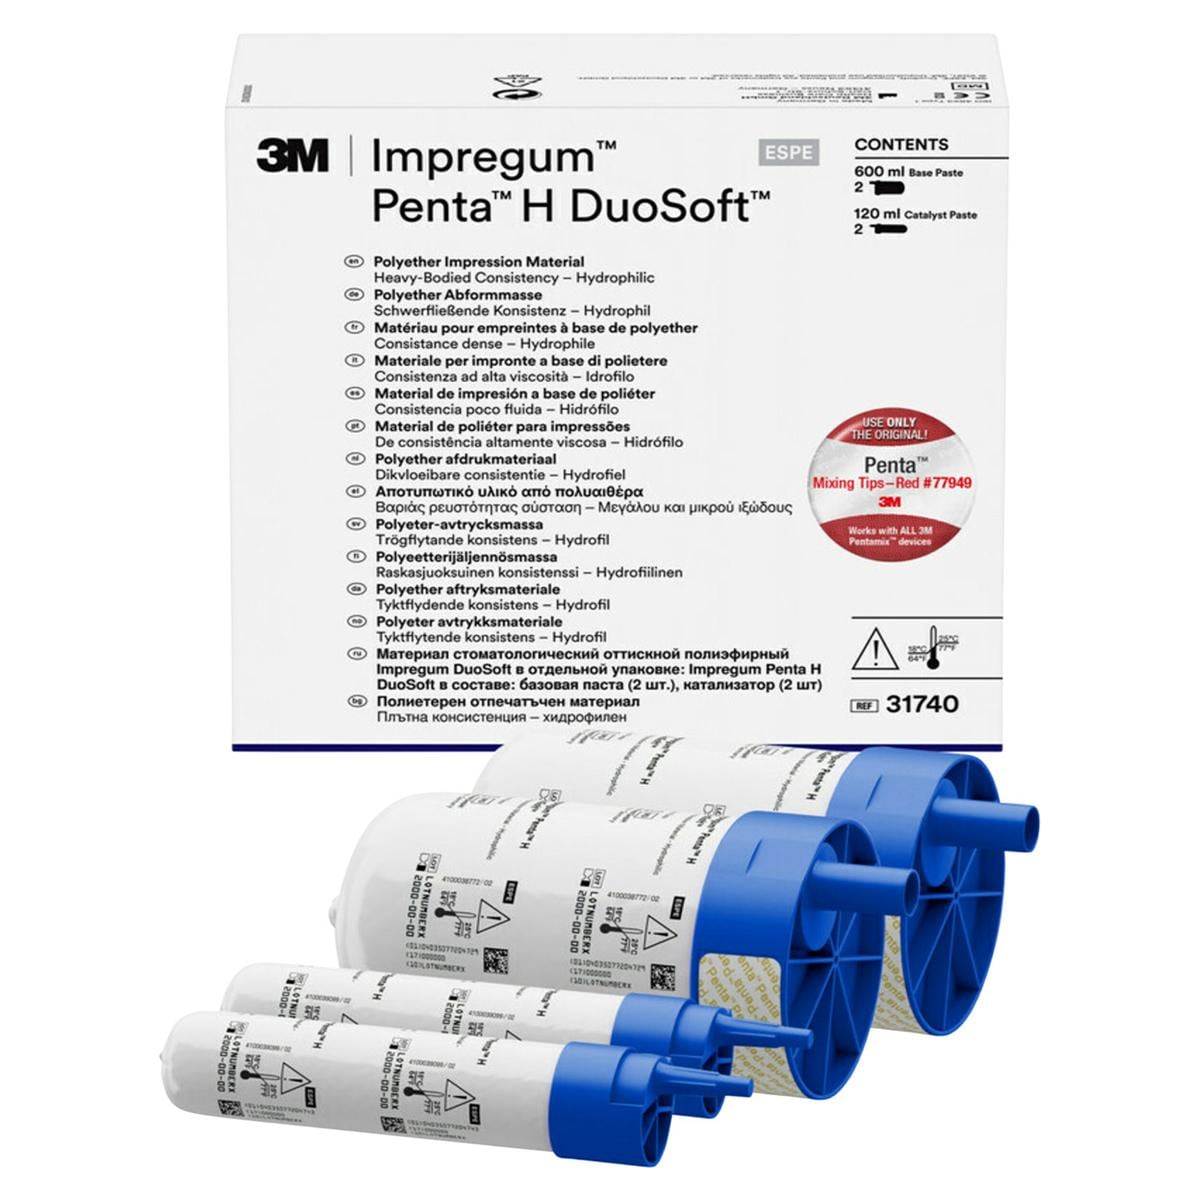 3M Impregum™ Penta™ H DuoSoft™ - Nachfüllpackung - Schlauchbeutel 2 x 300 ml Basispaste und 2 x 60 ml Katalysator